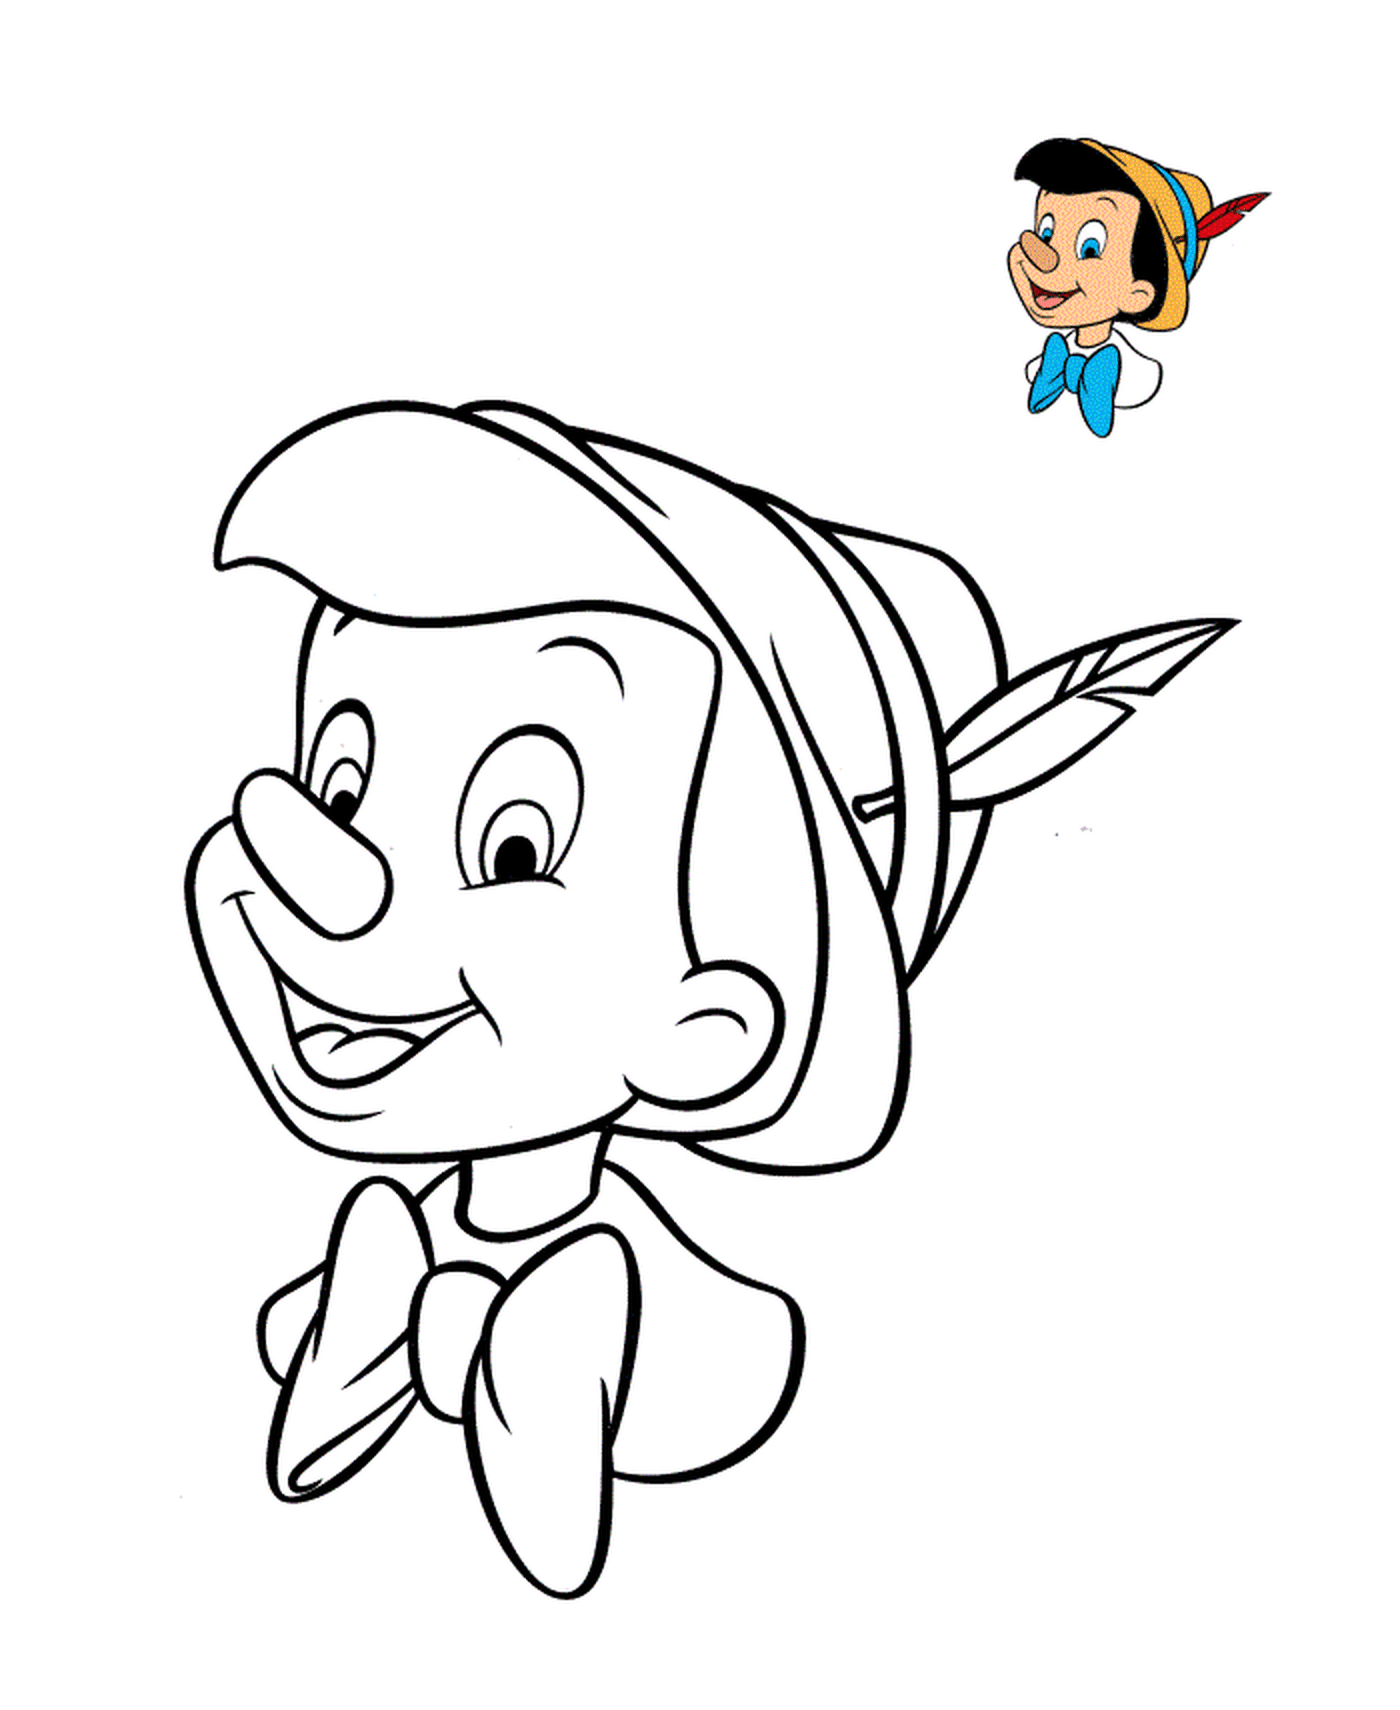  Пиноккио, забавный Дисней-герой 